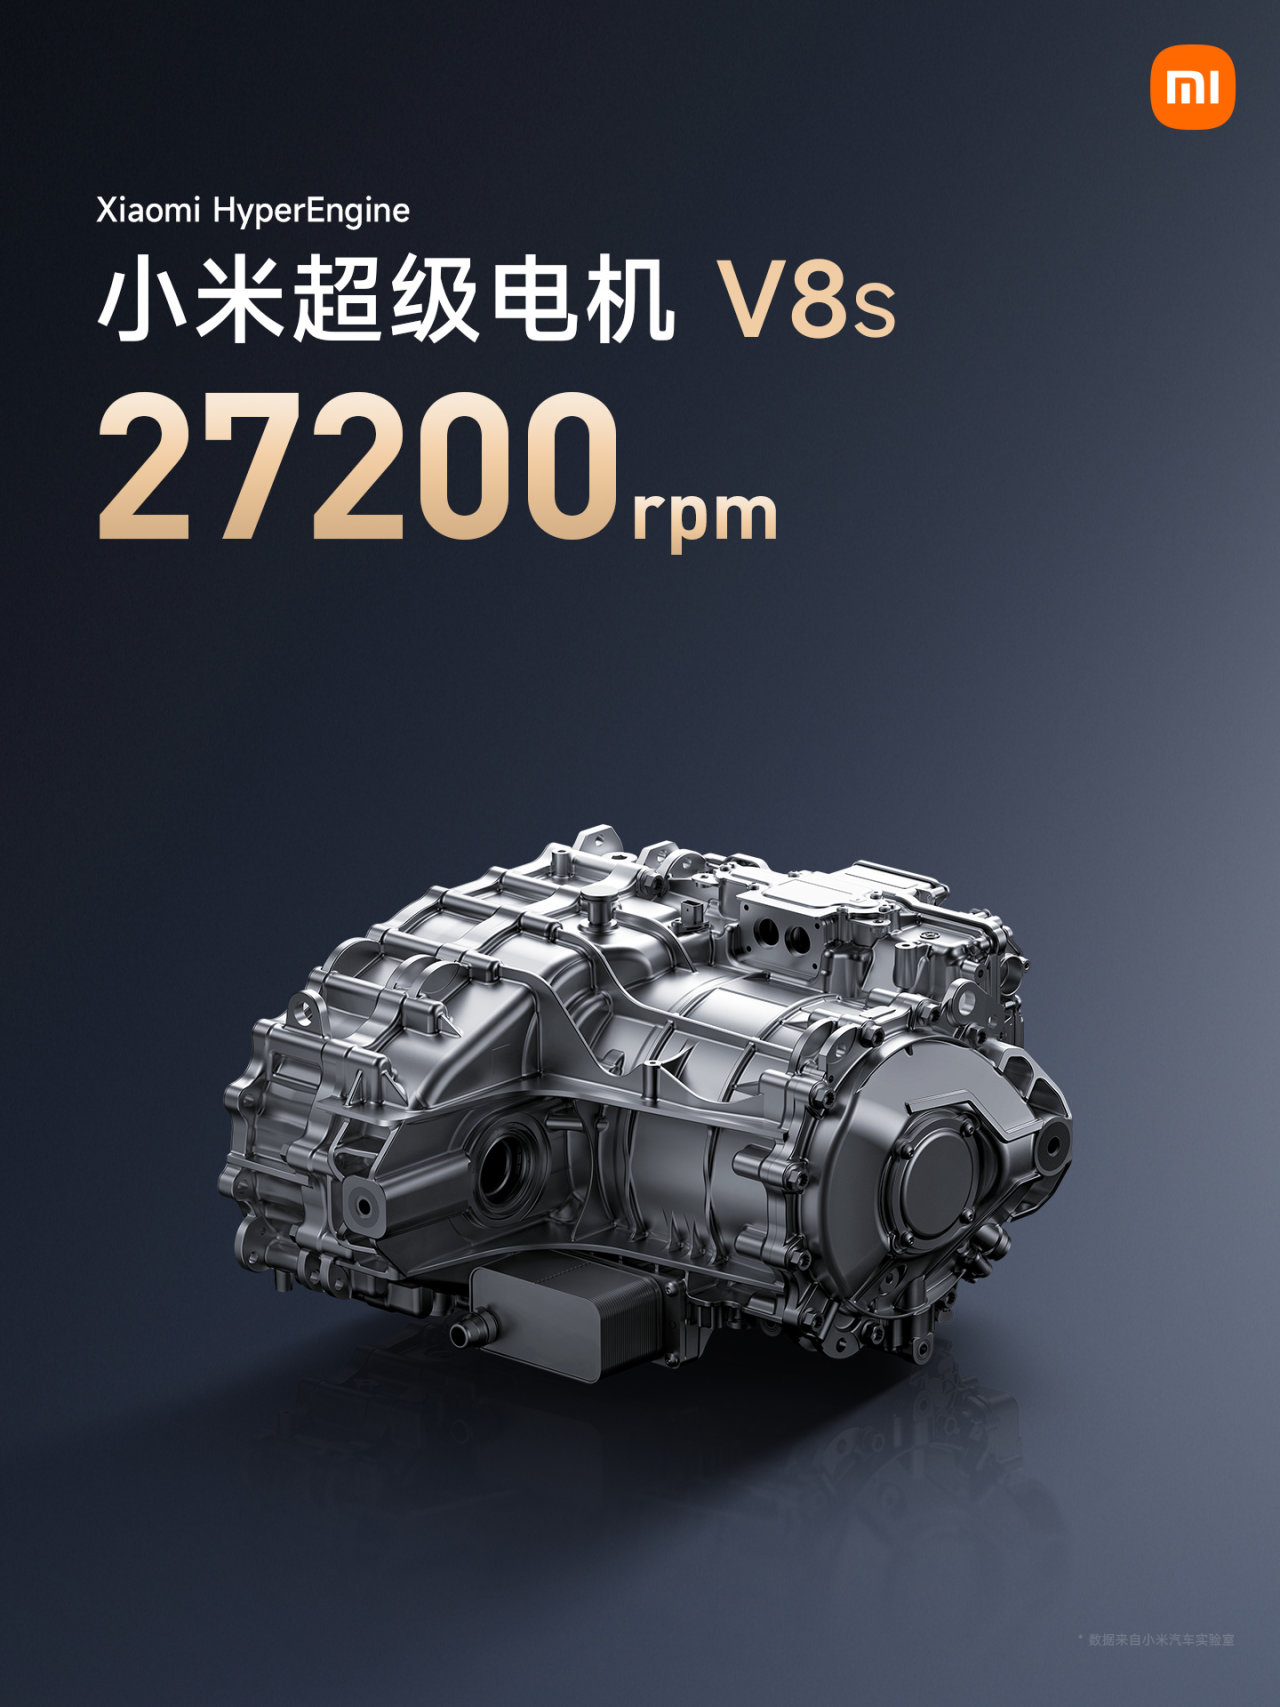 【爱车基地】雷军透露小米自研电机 V8s 年底上车，27200rpm 转速业内第一-第0张